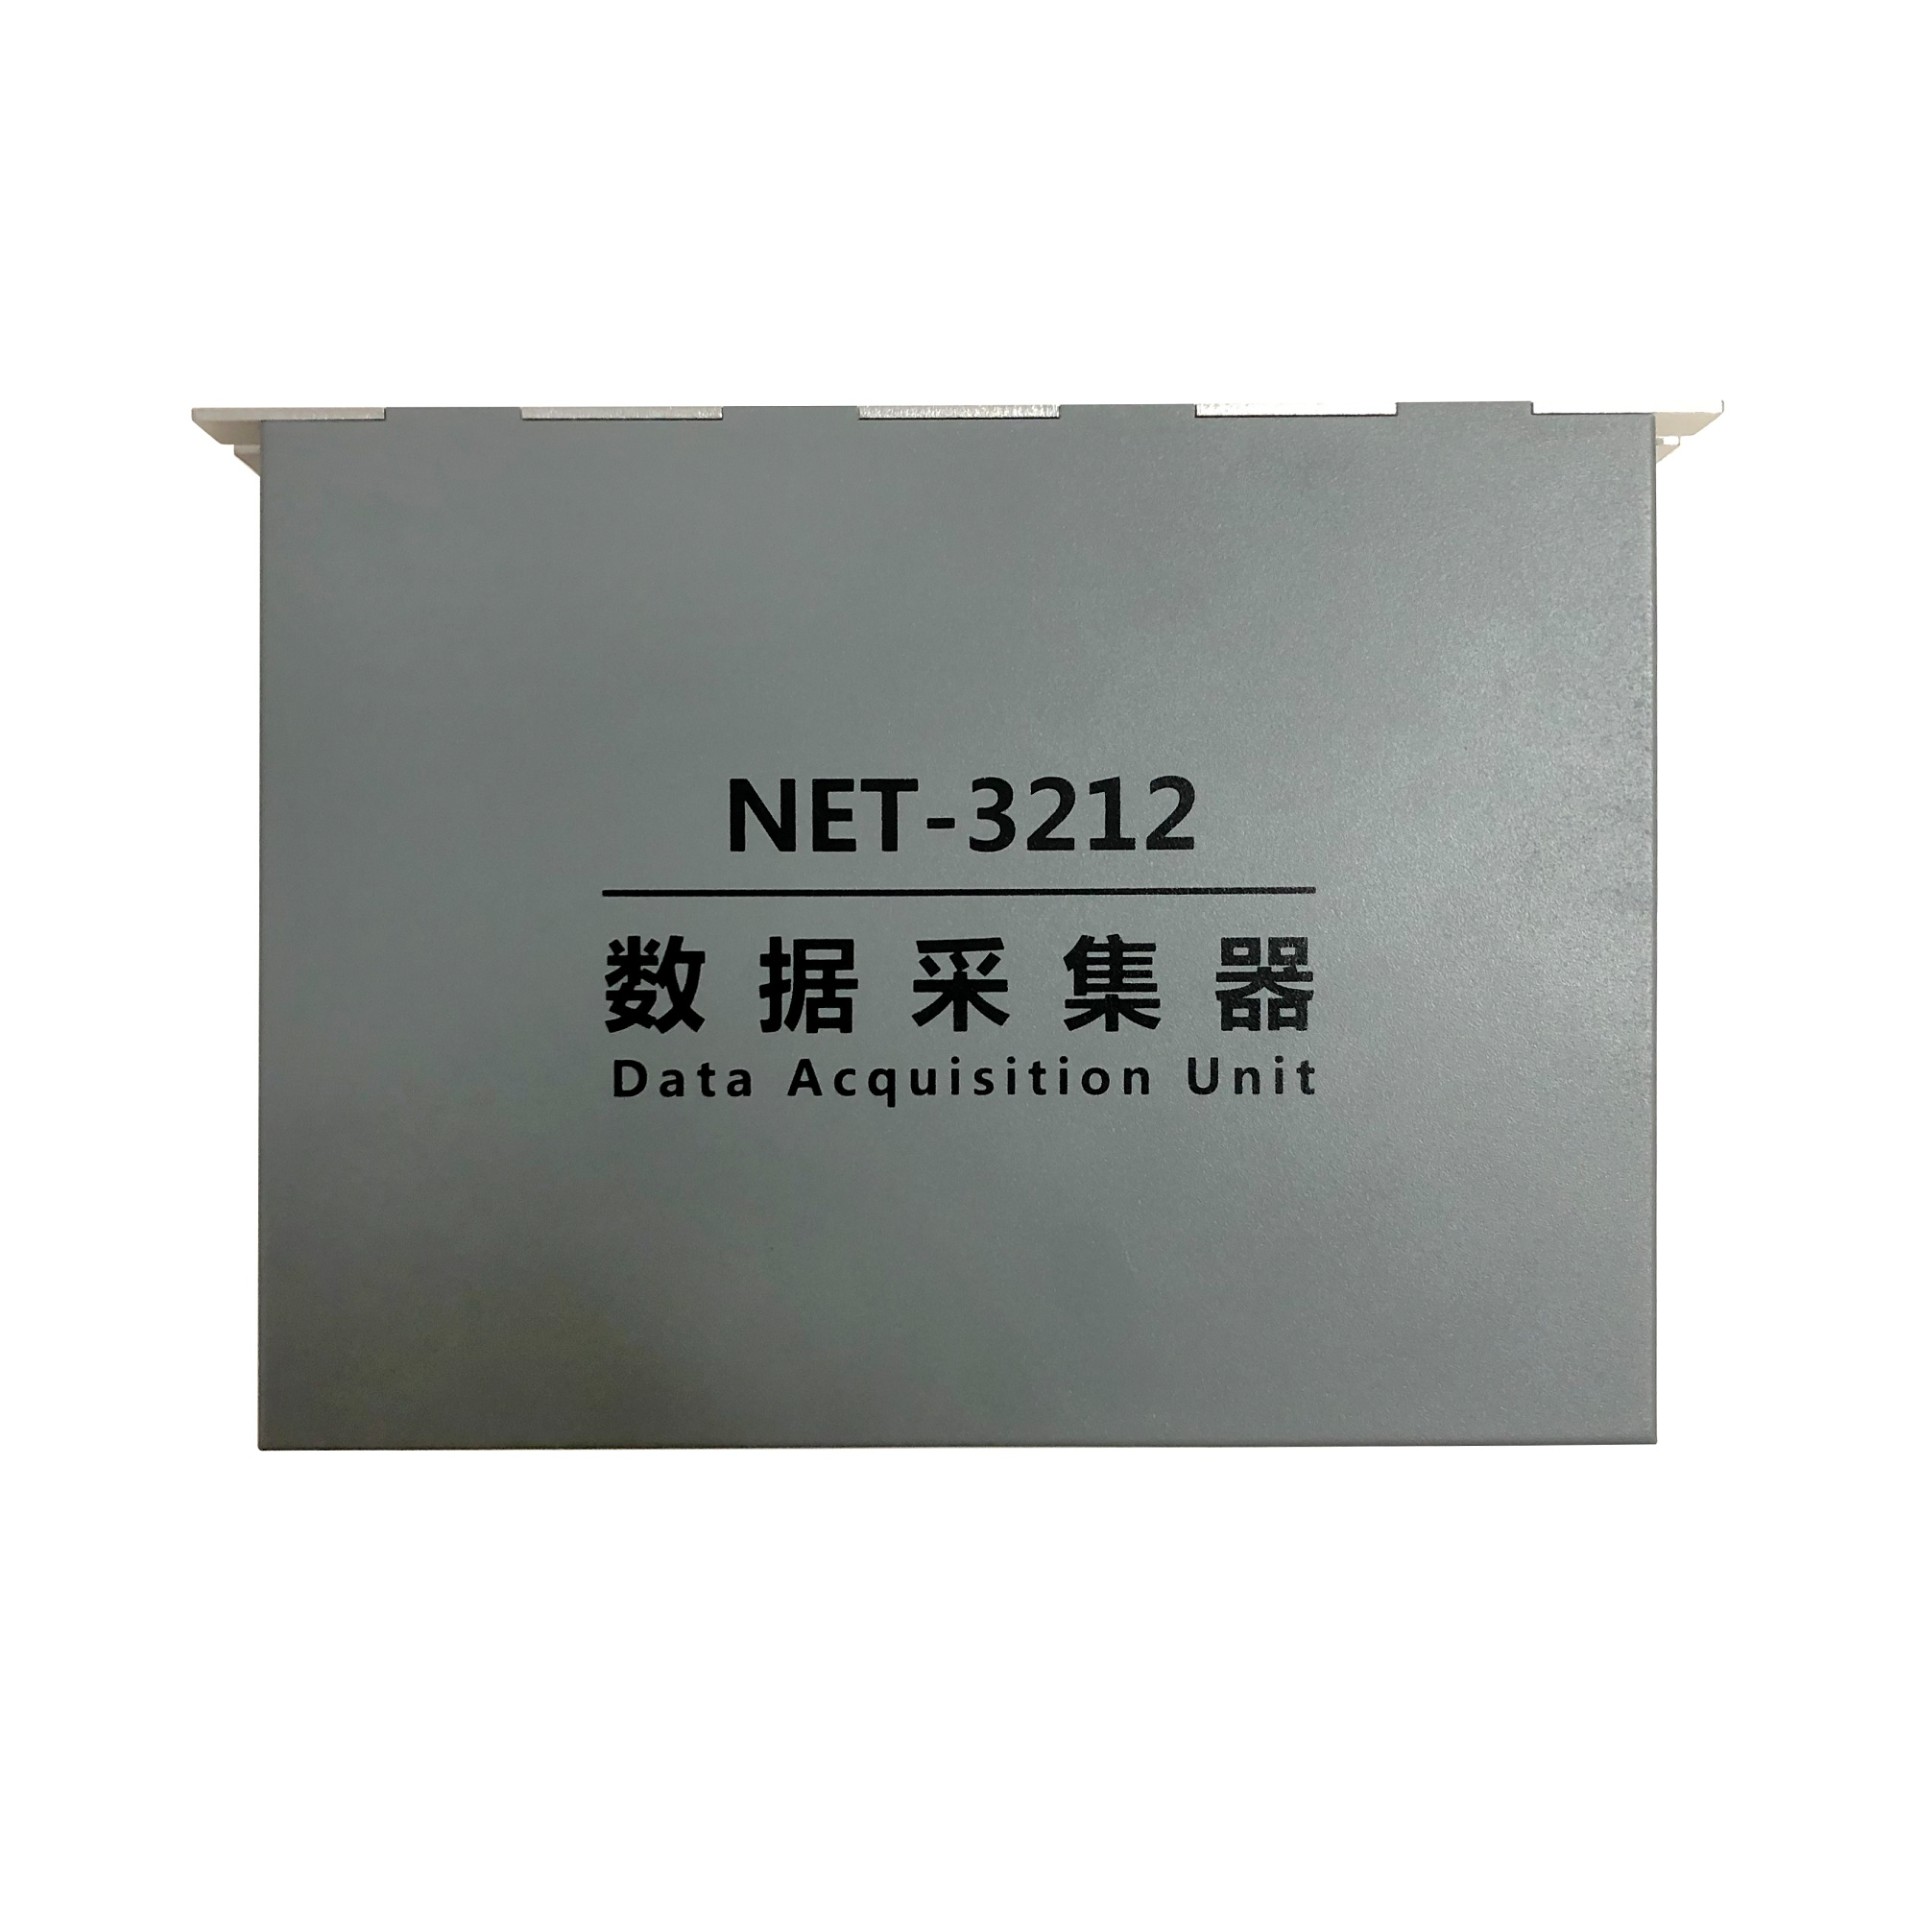 NET-3212